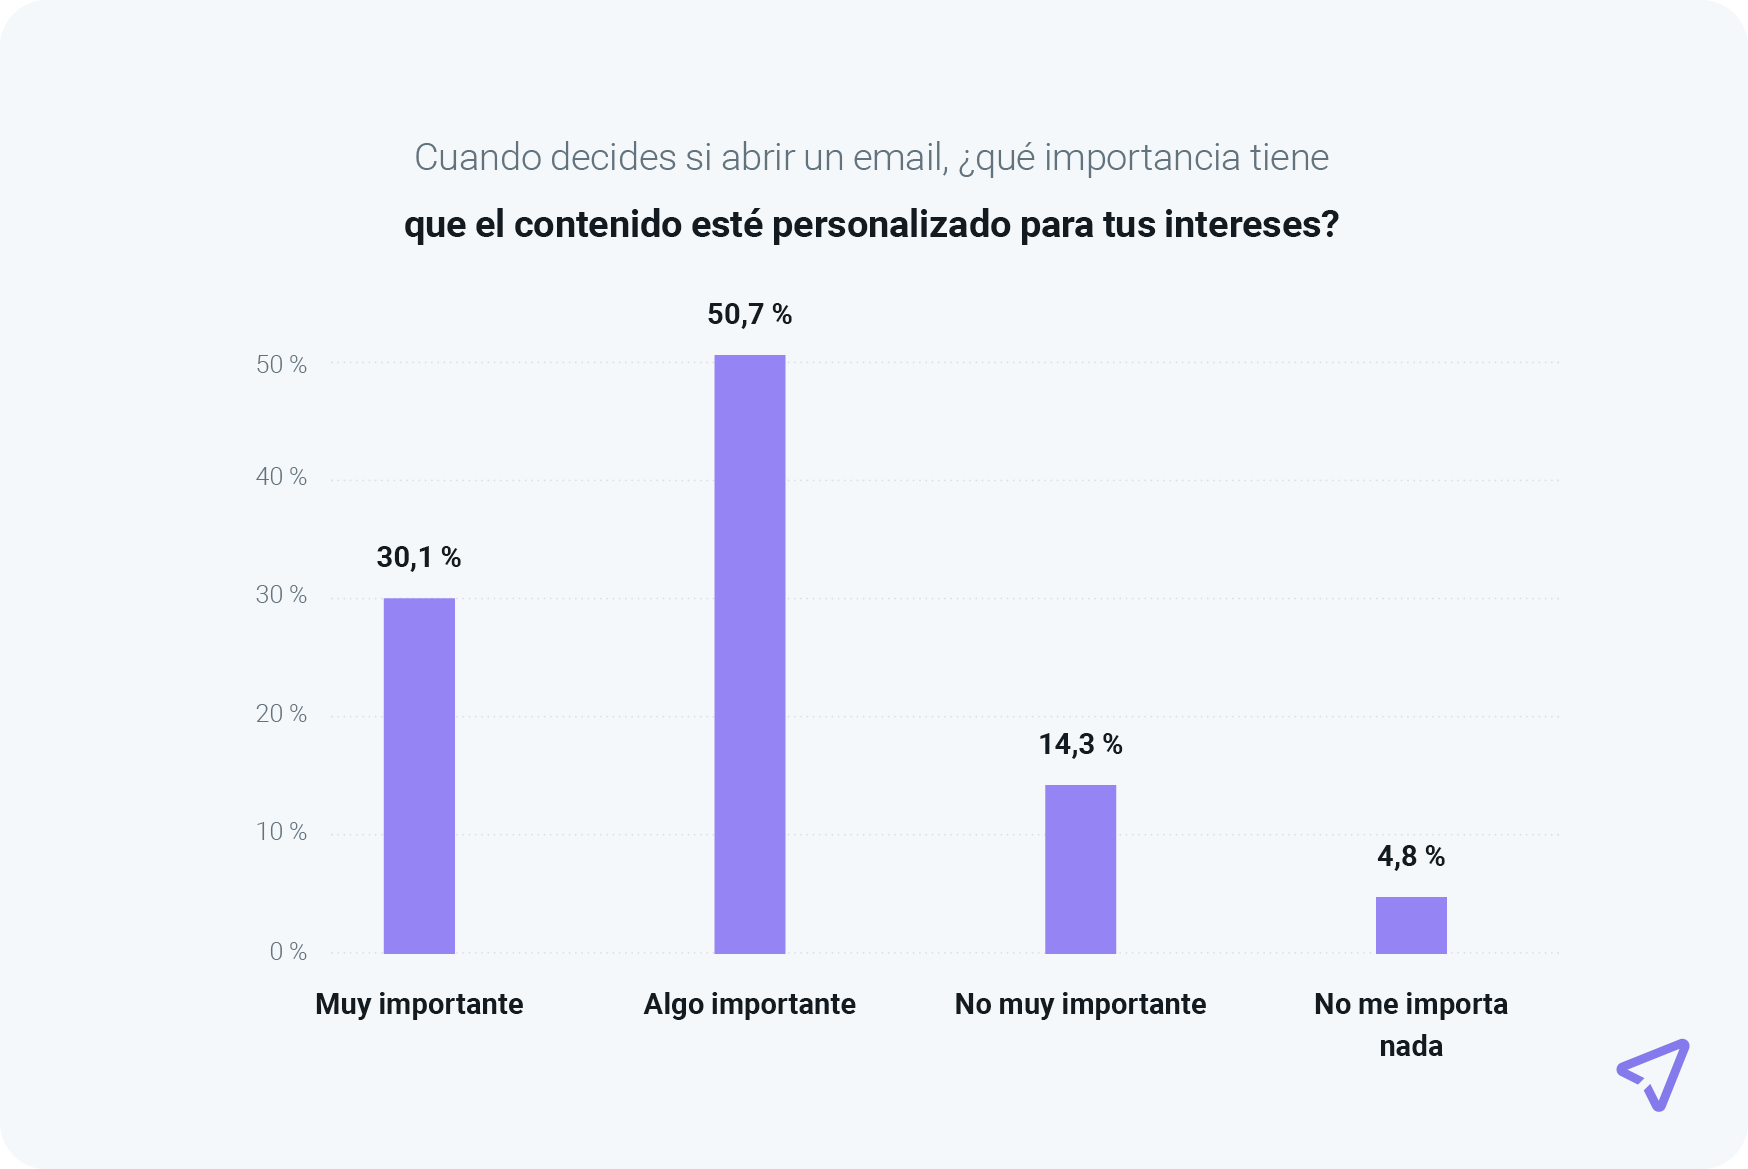 El gráfico muestra que el 80,8 % de los consumidores considera importante el contenido personalizado de los emails